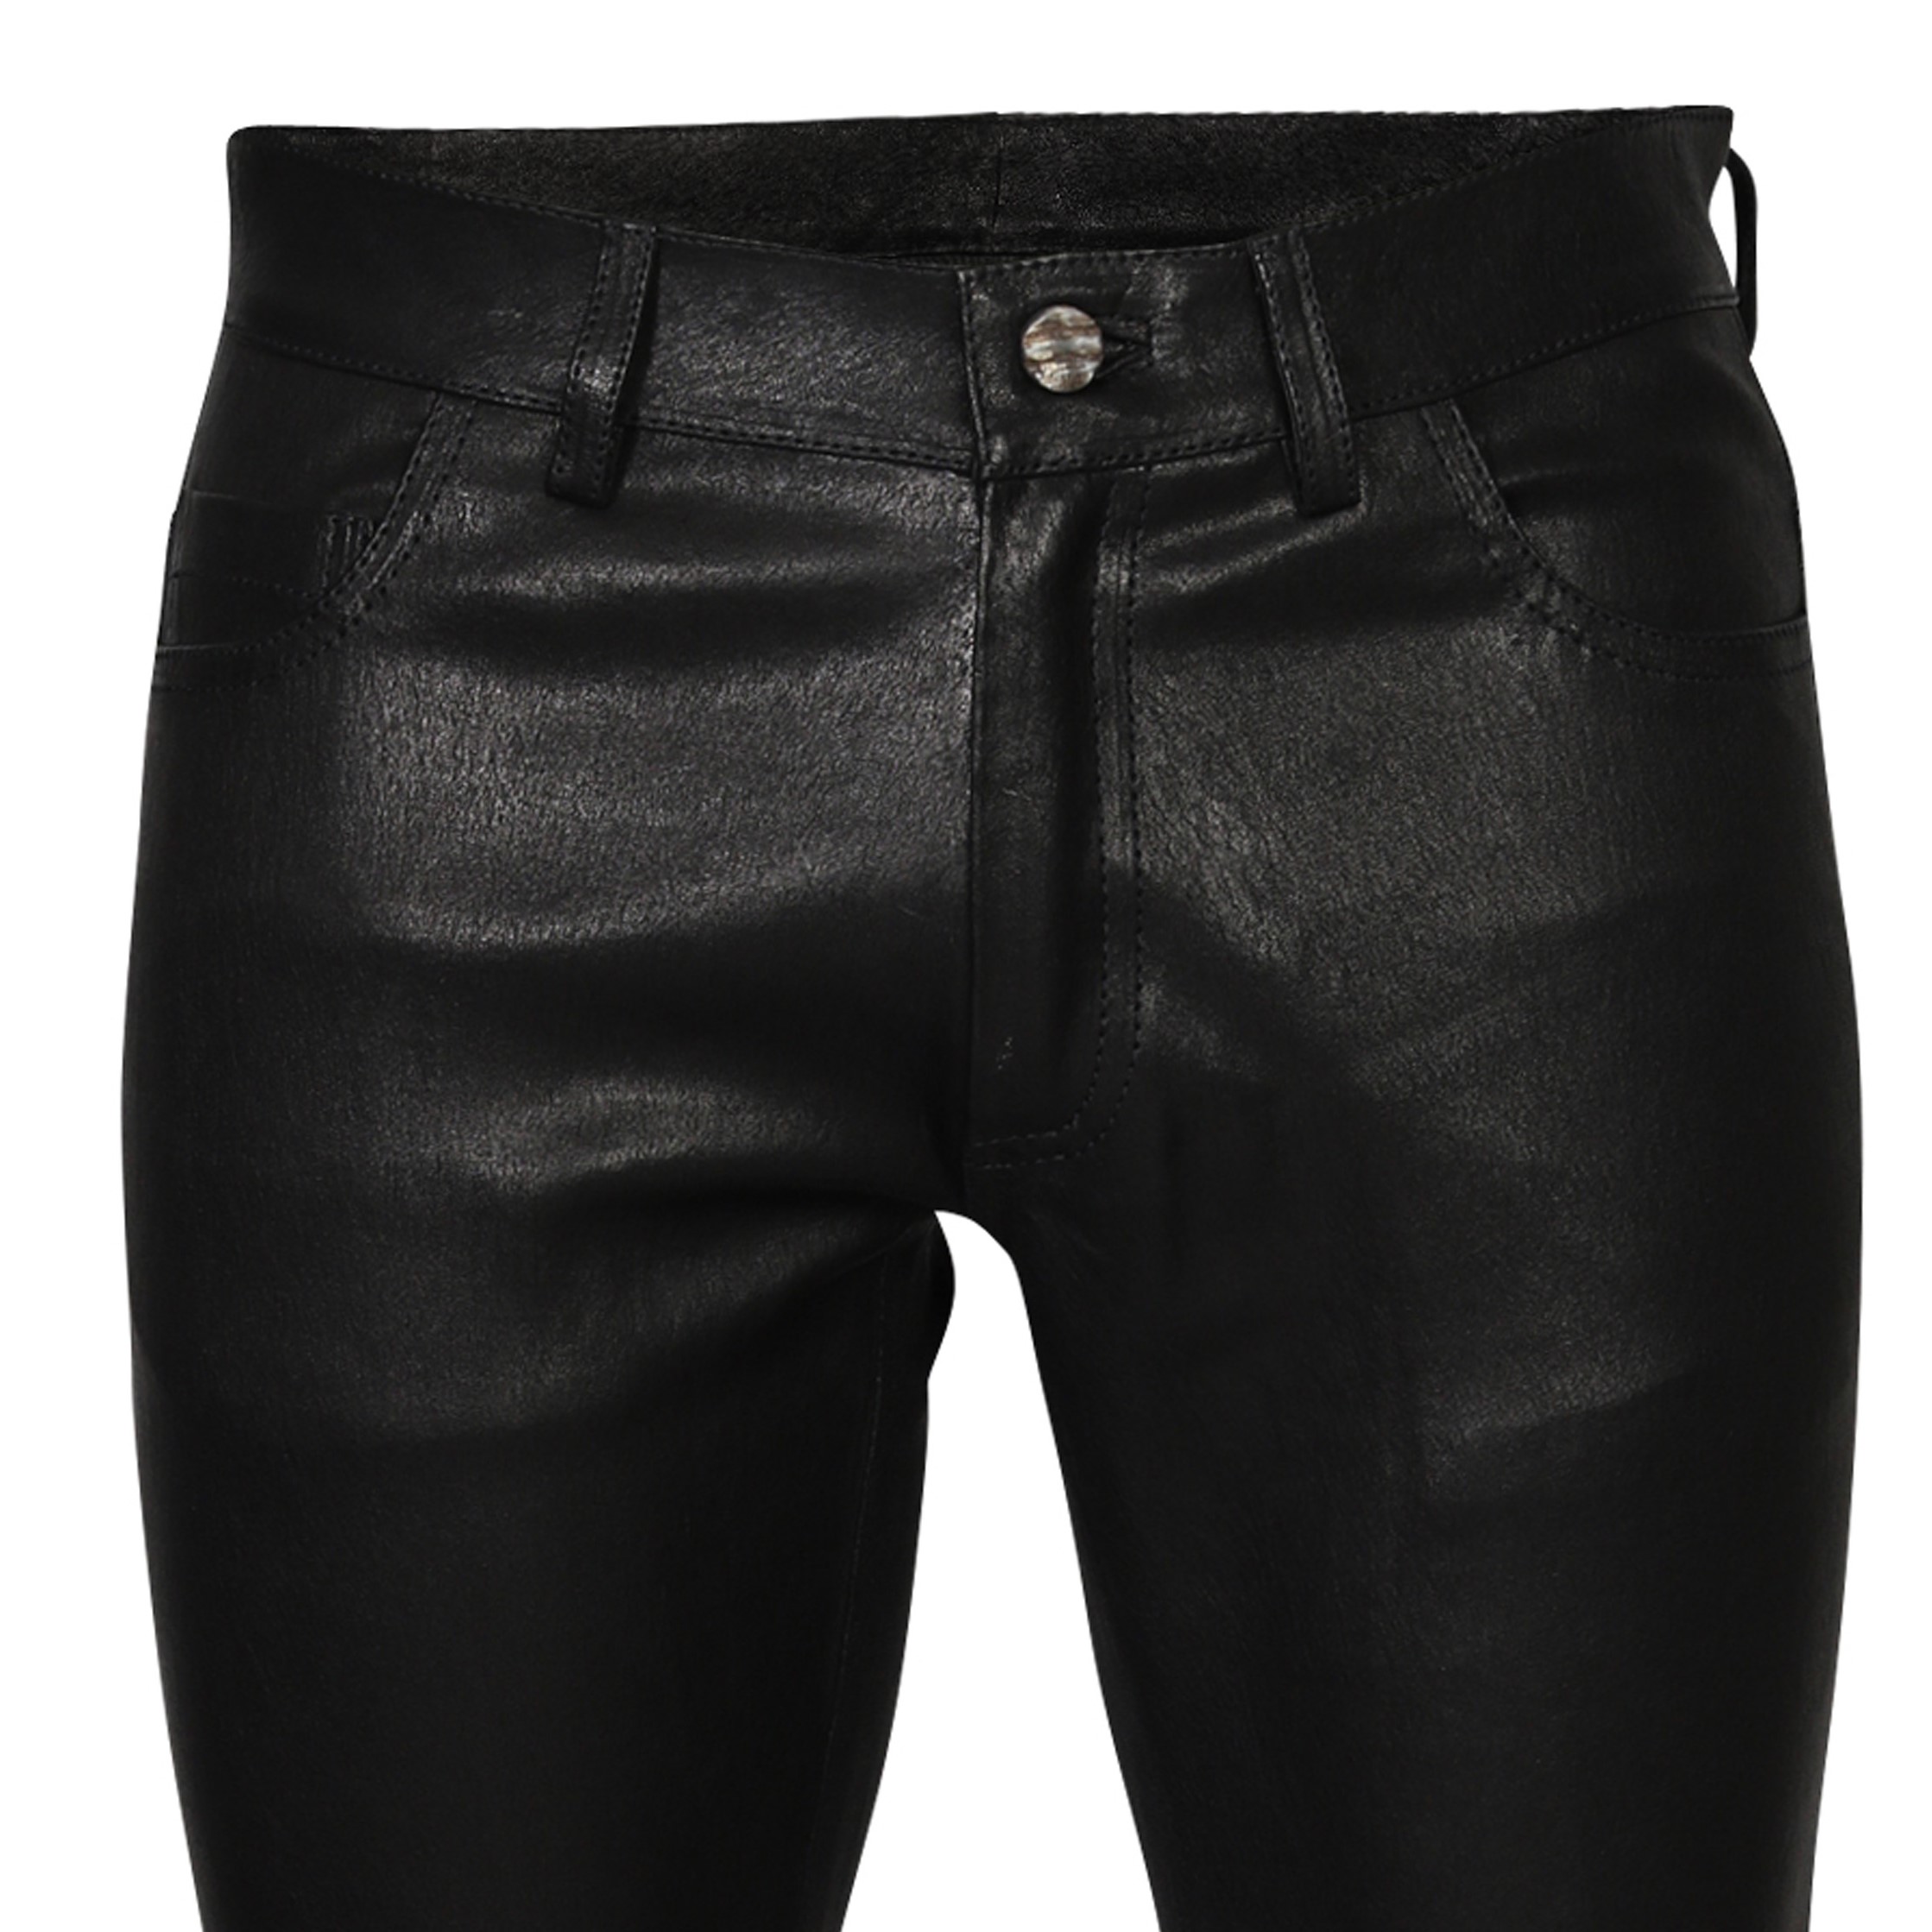 Giorgio Brato Leather Pant in Black 52